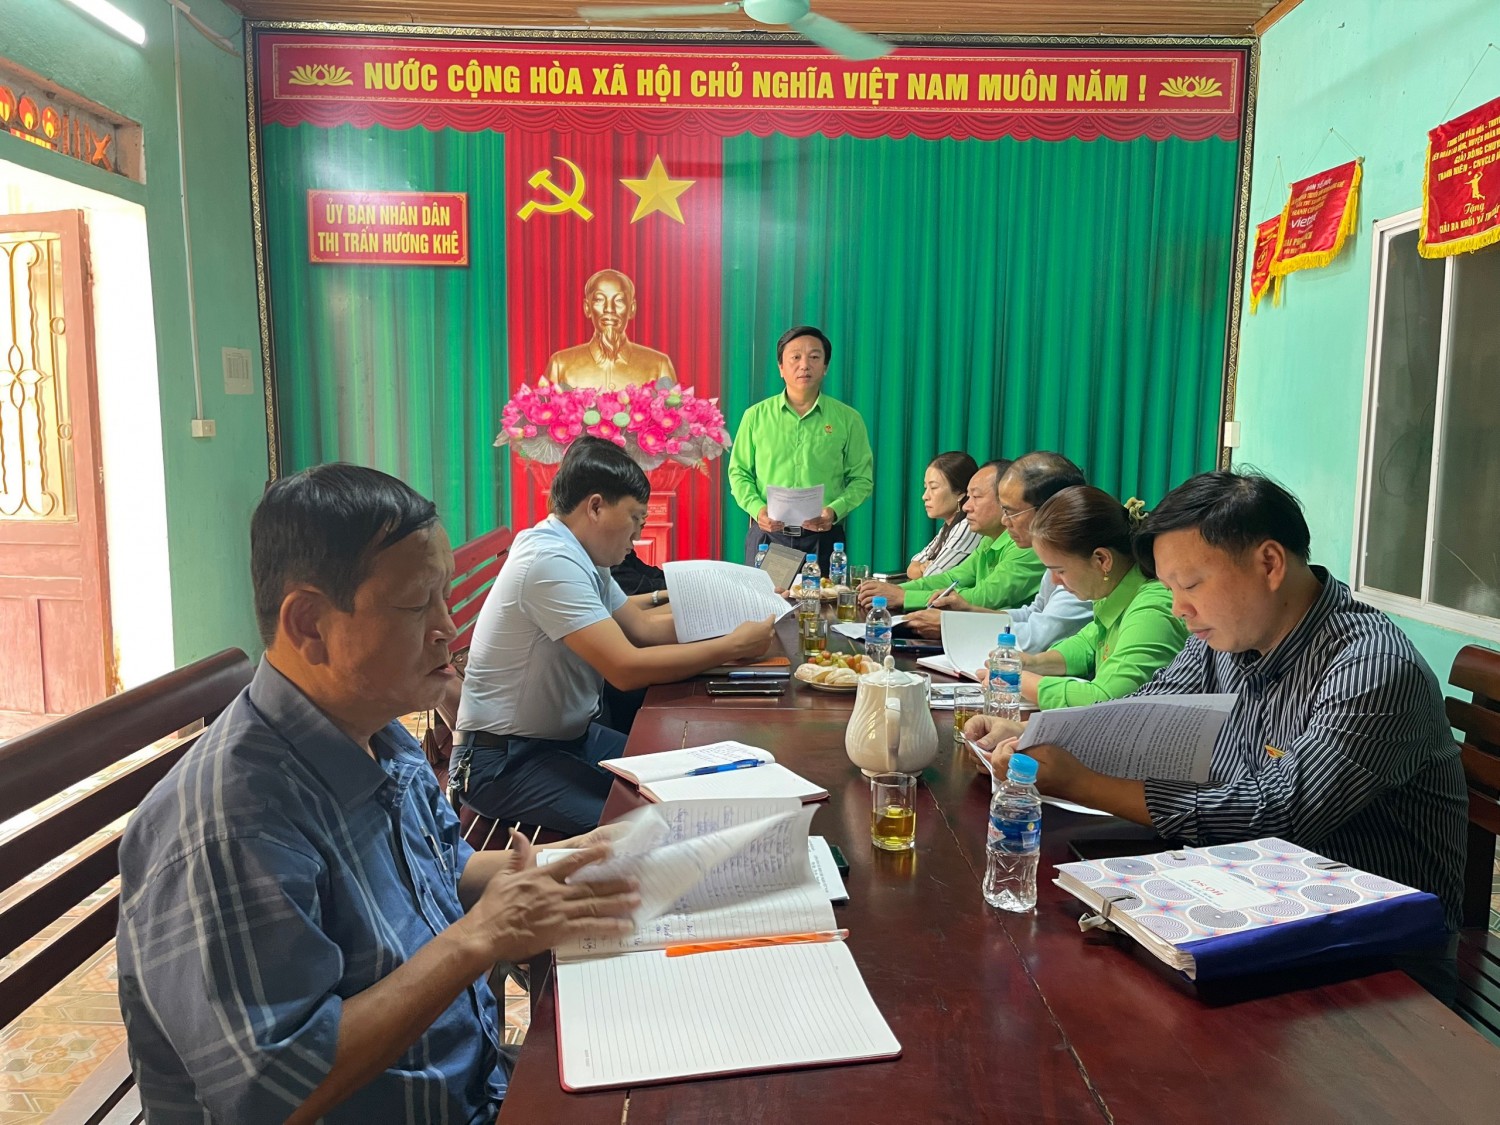 Đồng chí Đinh Cộng Tịu, HUV, Chủ tịch Hội Nông dân huyện kết luận buổi làm việc tại thị trấn huyện